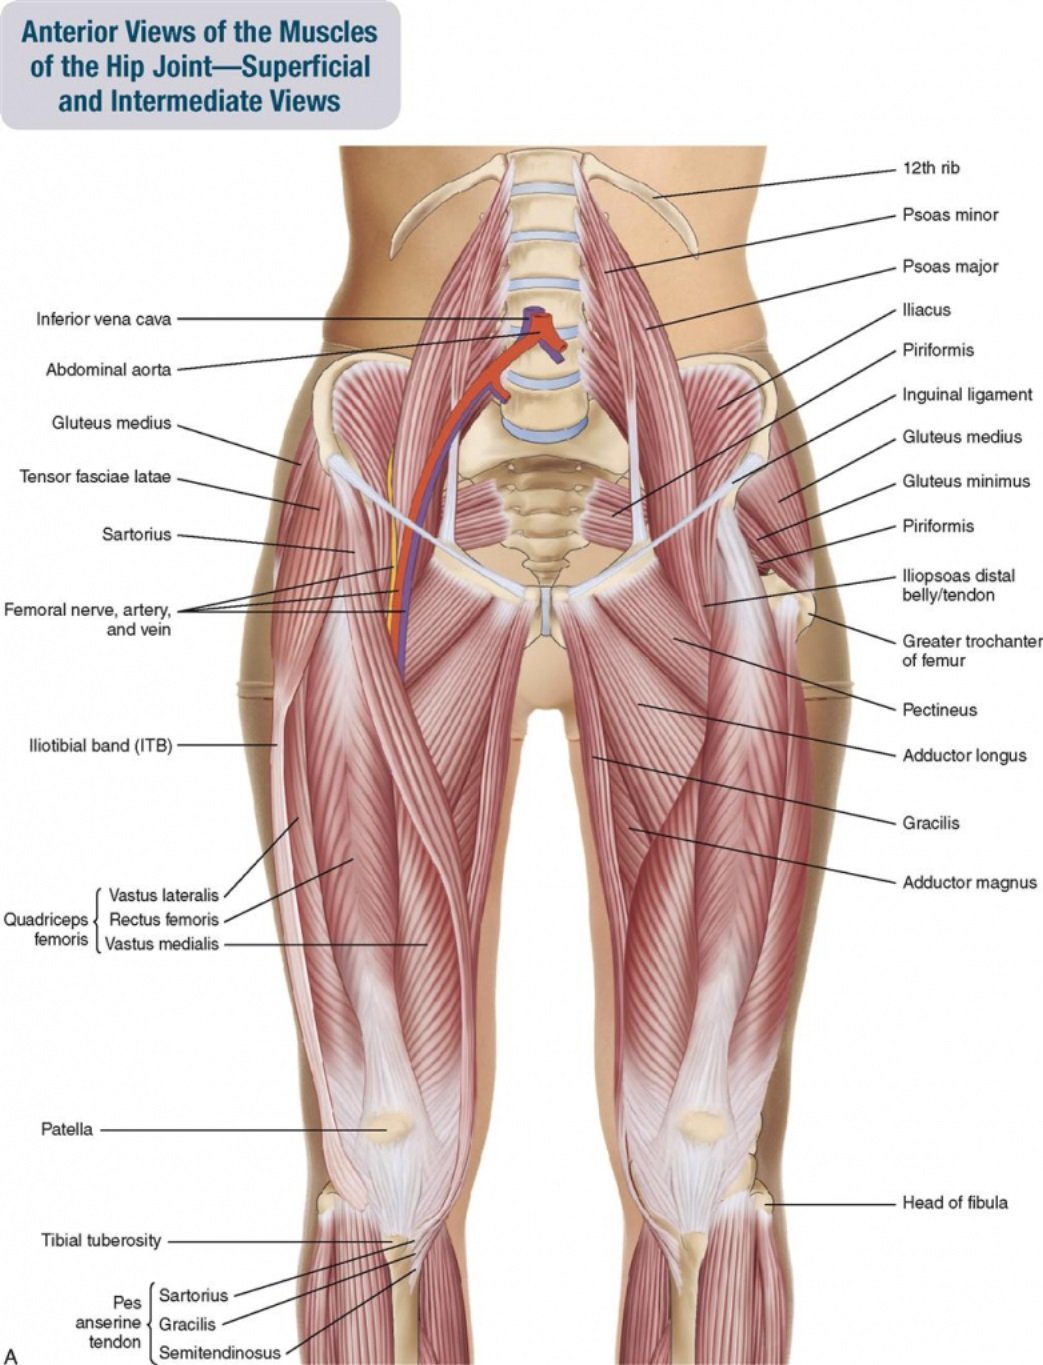 Бедро часть тела человека. Мышцы таза и бедра анатомия. Сухожилия внутренней поверхности бедра анатомия. Анатомия ягодичных мышц человека. Связки бедра анатомия.